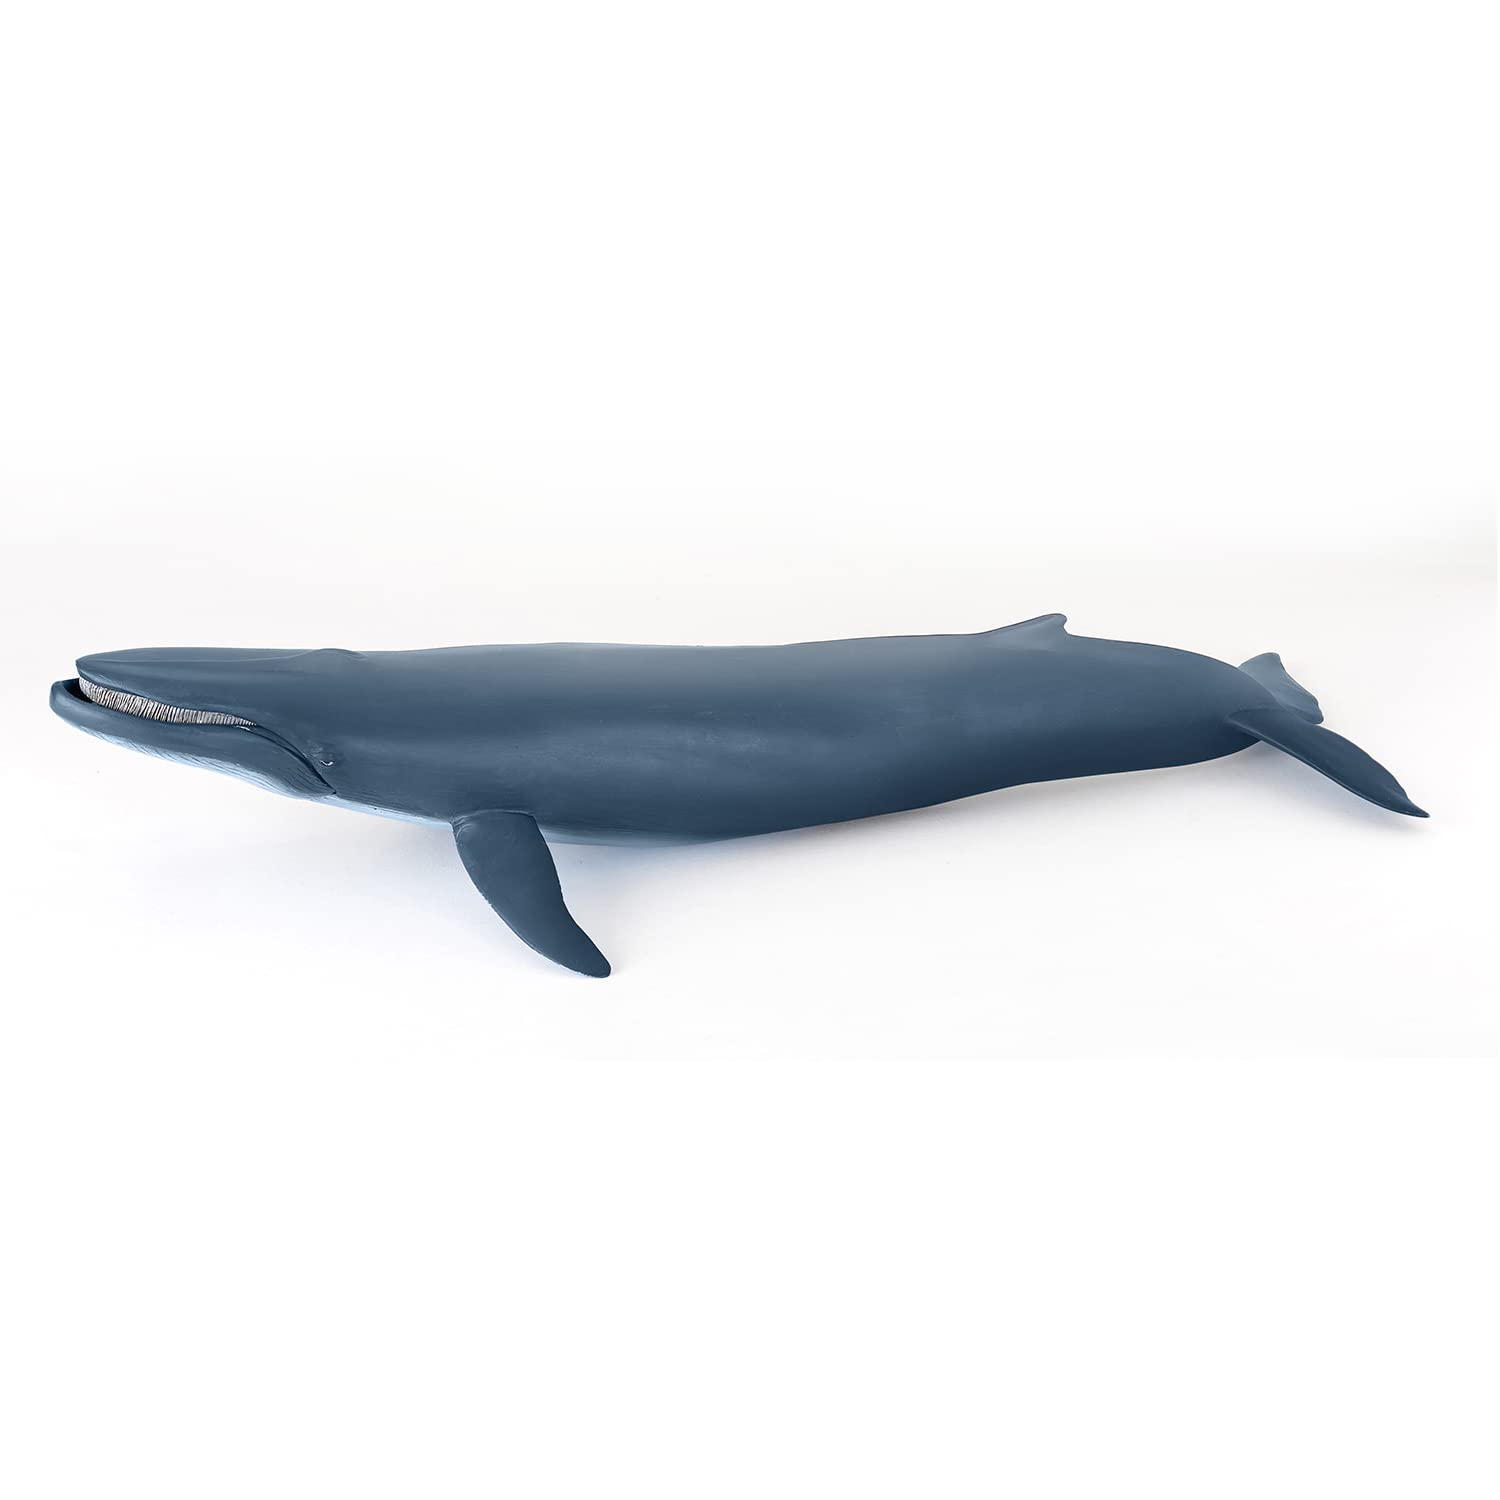 Papo - Große Figur - Wal, Meeresriese, Spielzeug für Kinder ab 3 Jahren - Meerestiere - 38.50 cm x 17.00cm - Erforschung der Ozeane und Sensibilisierung für das Leben im Meer